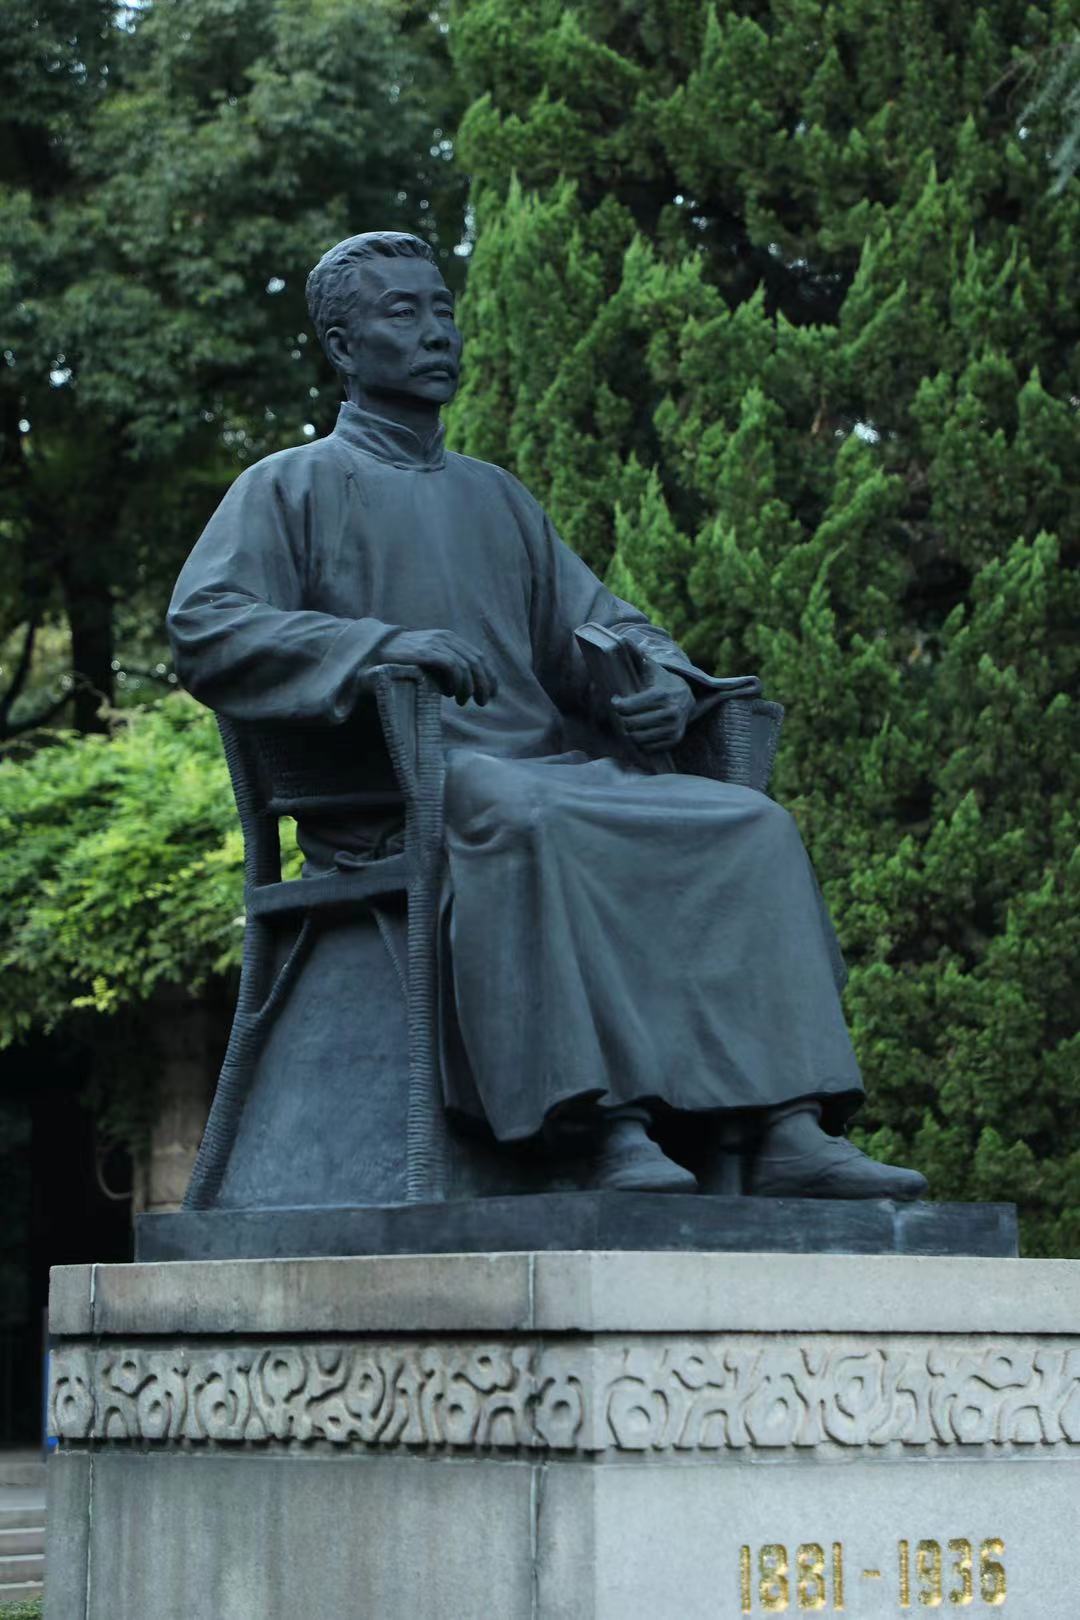 上海鲁迅公园鲁迅雕像 视觉中国 资料图鲁迅没有过时,反而影响越来越